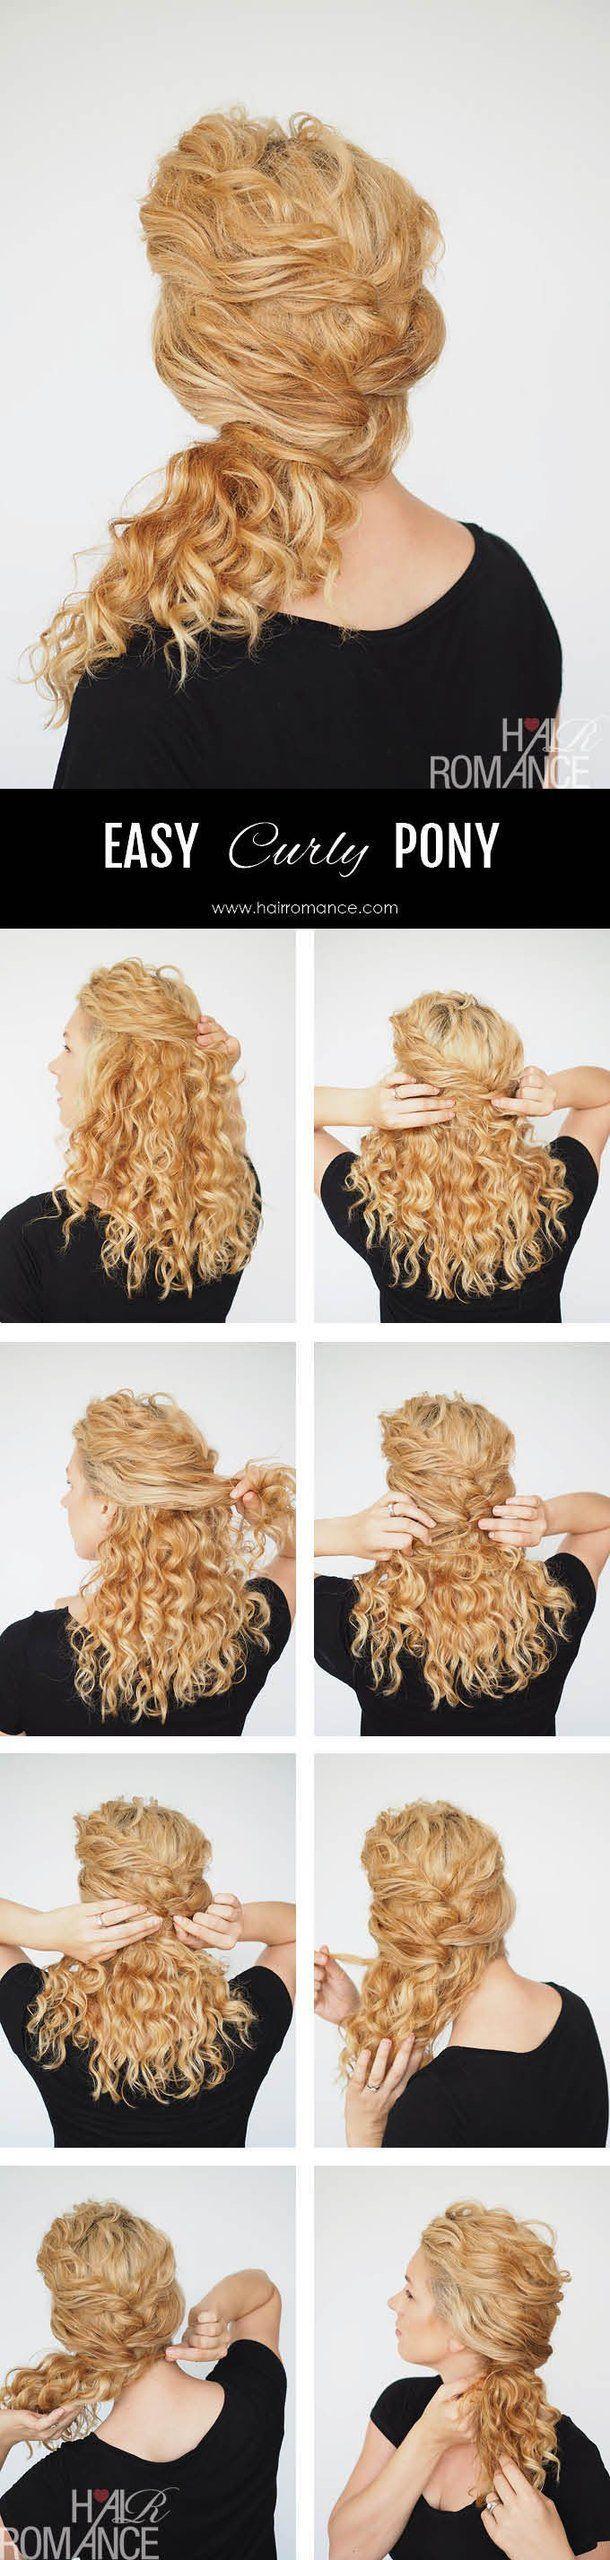 รูปภาพ:http://fashionsy.com/wp-content/uploads/2015/12/Hair-Romance-easy-ponytail-curly-hair-tutorial-1.jpg